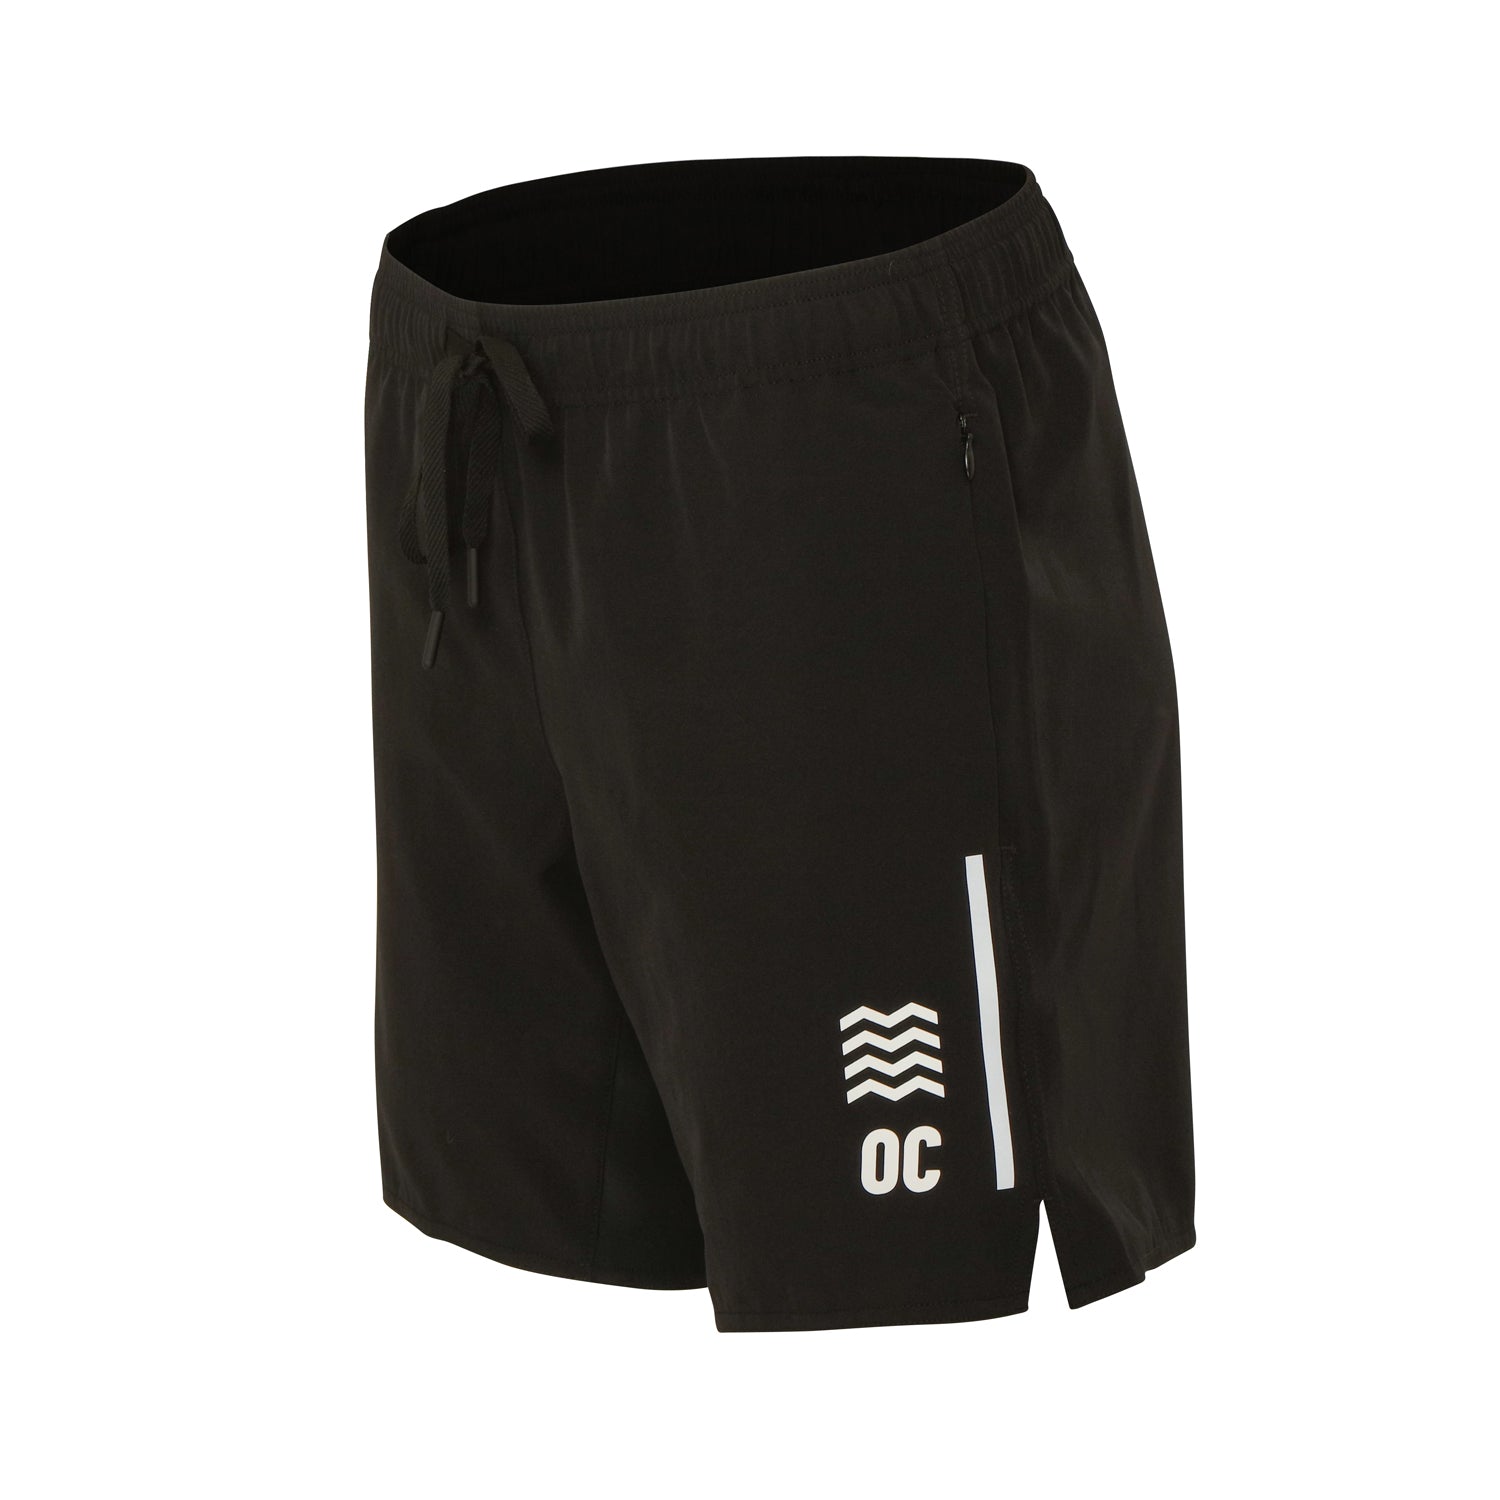 OC Eco Training Shorts